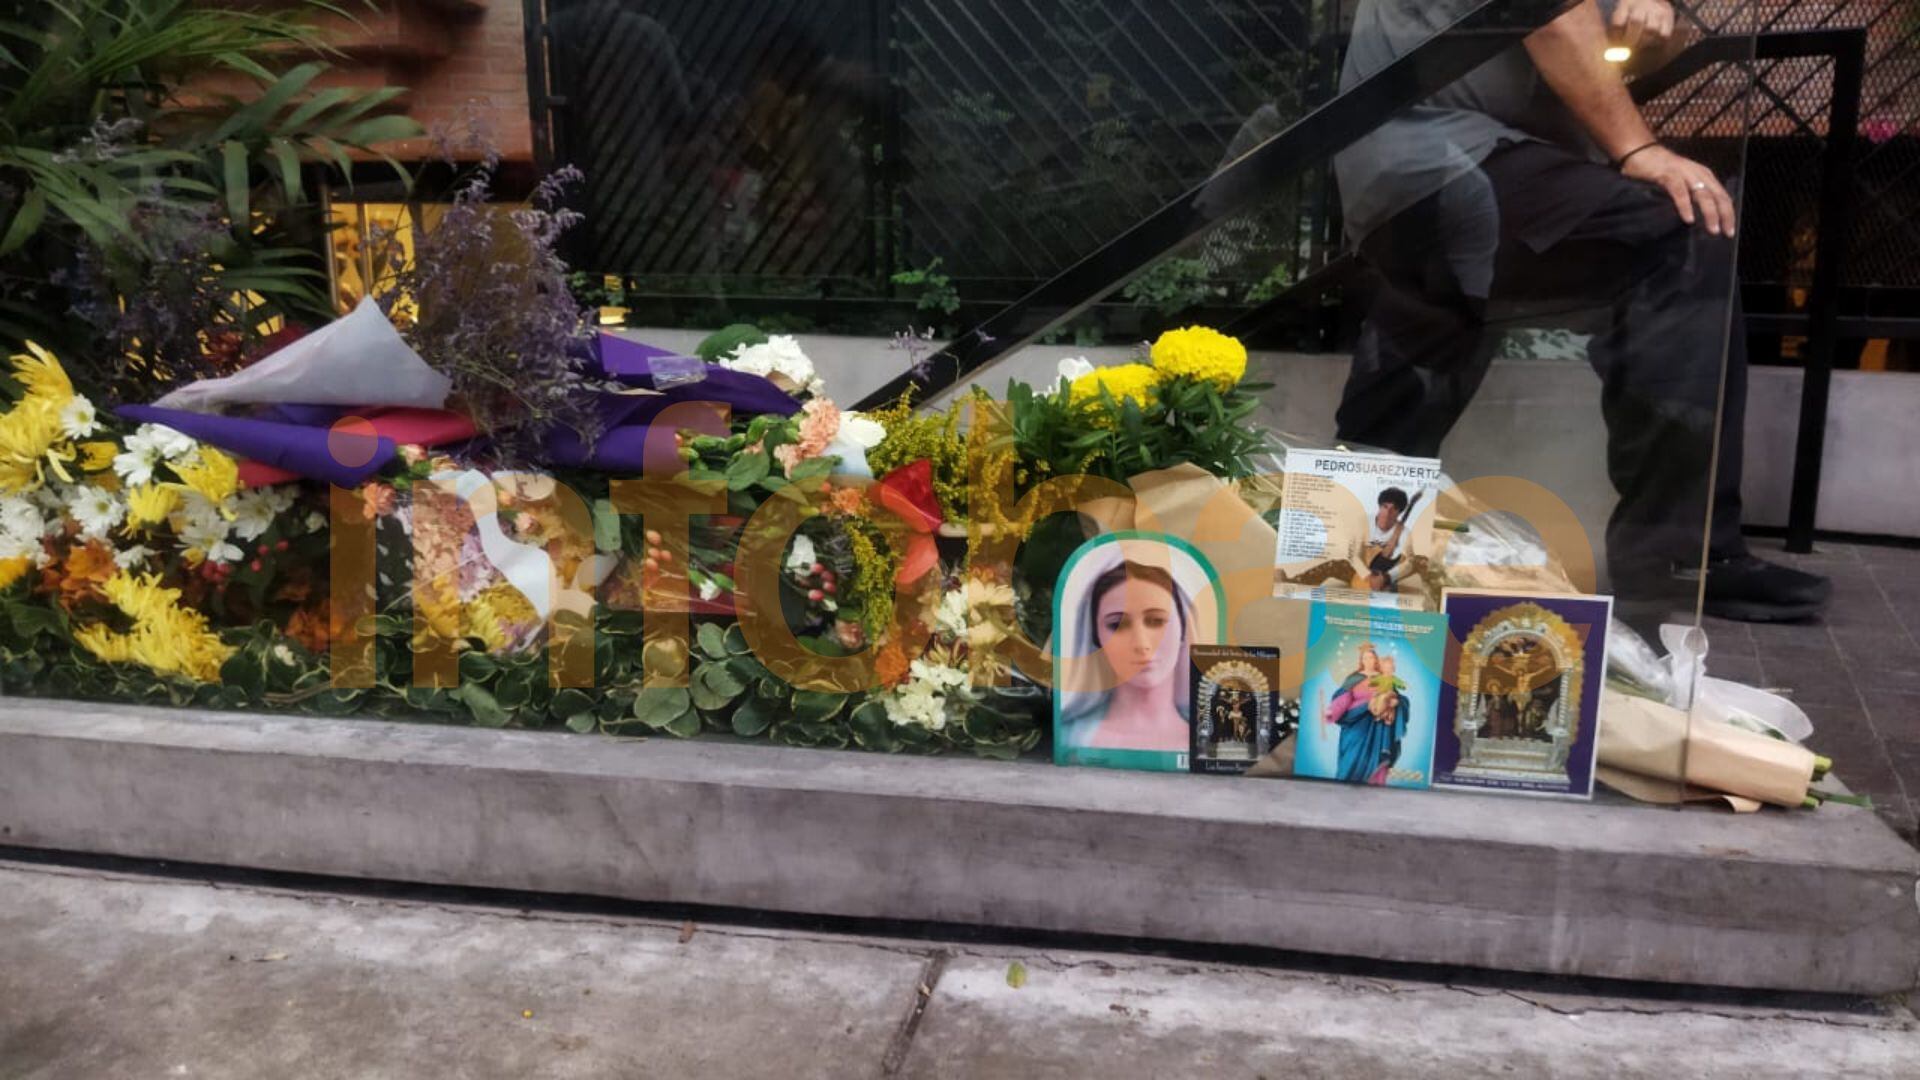 Fanáticos dejan recuerdos y flores en el frontis del departamento donde falleció Pedro Suárez Vértiz